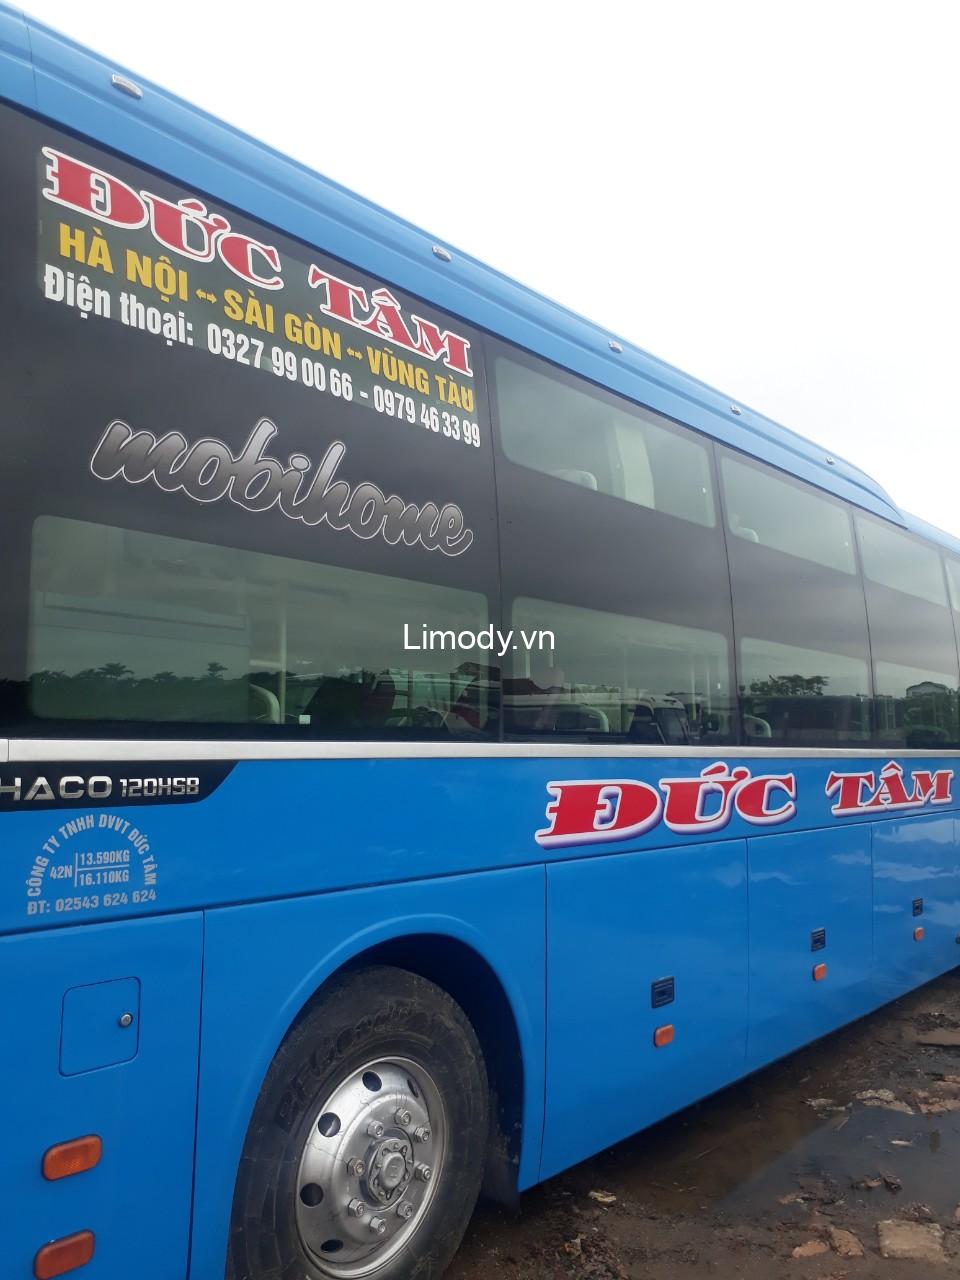 Top 10 Nhà xe Hà Nội Vũng Tàu: đặt vé limousine, xe khách giường nằm